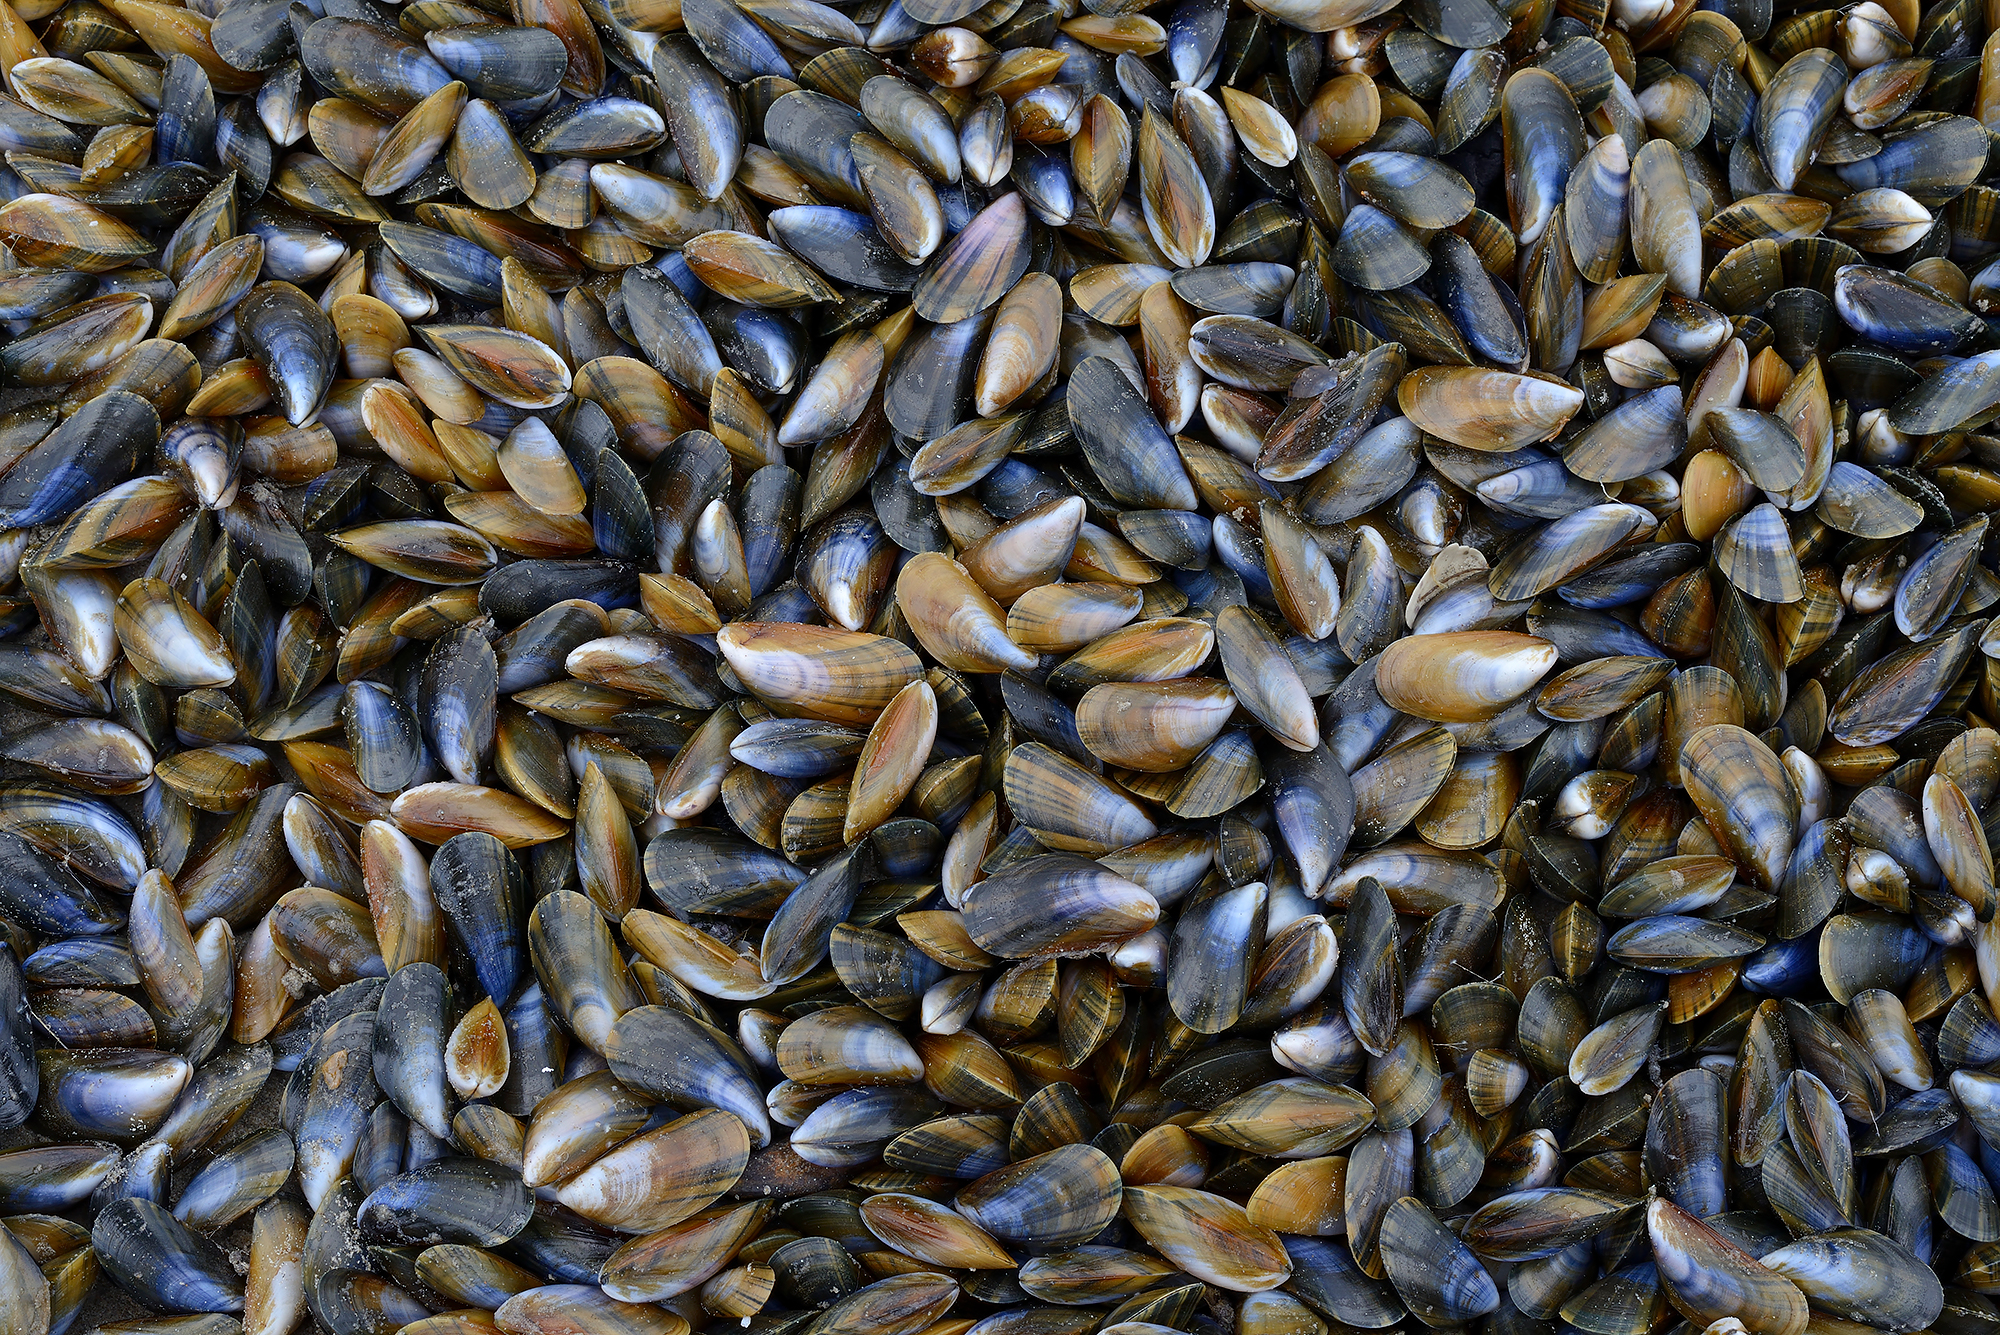 Grote groep aangespoelde mossels (Mytilus edulis) langs de vloedlijn op het strand van Wijk aan Zee na een winterstorm op de Noordzee.